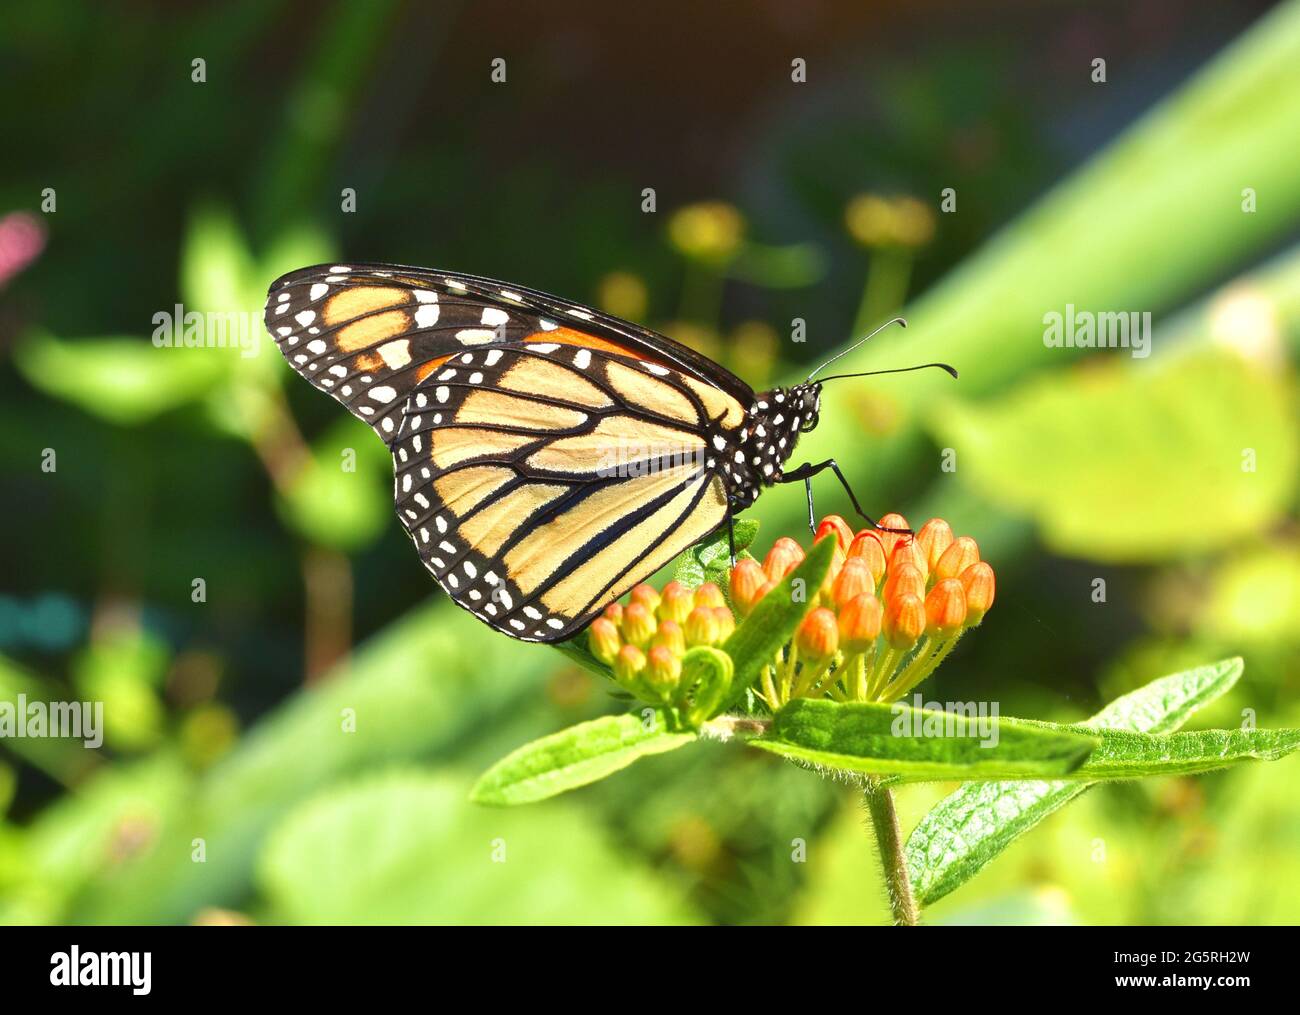 Un papillon monarque (Danaus plexippus) reposant sur les boutons de fleurs orange de l'herbe de papillon (Asclepias tuberosa). Copier l'espace. Gros plan. Banque D'Images